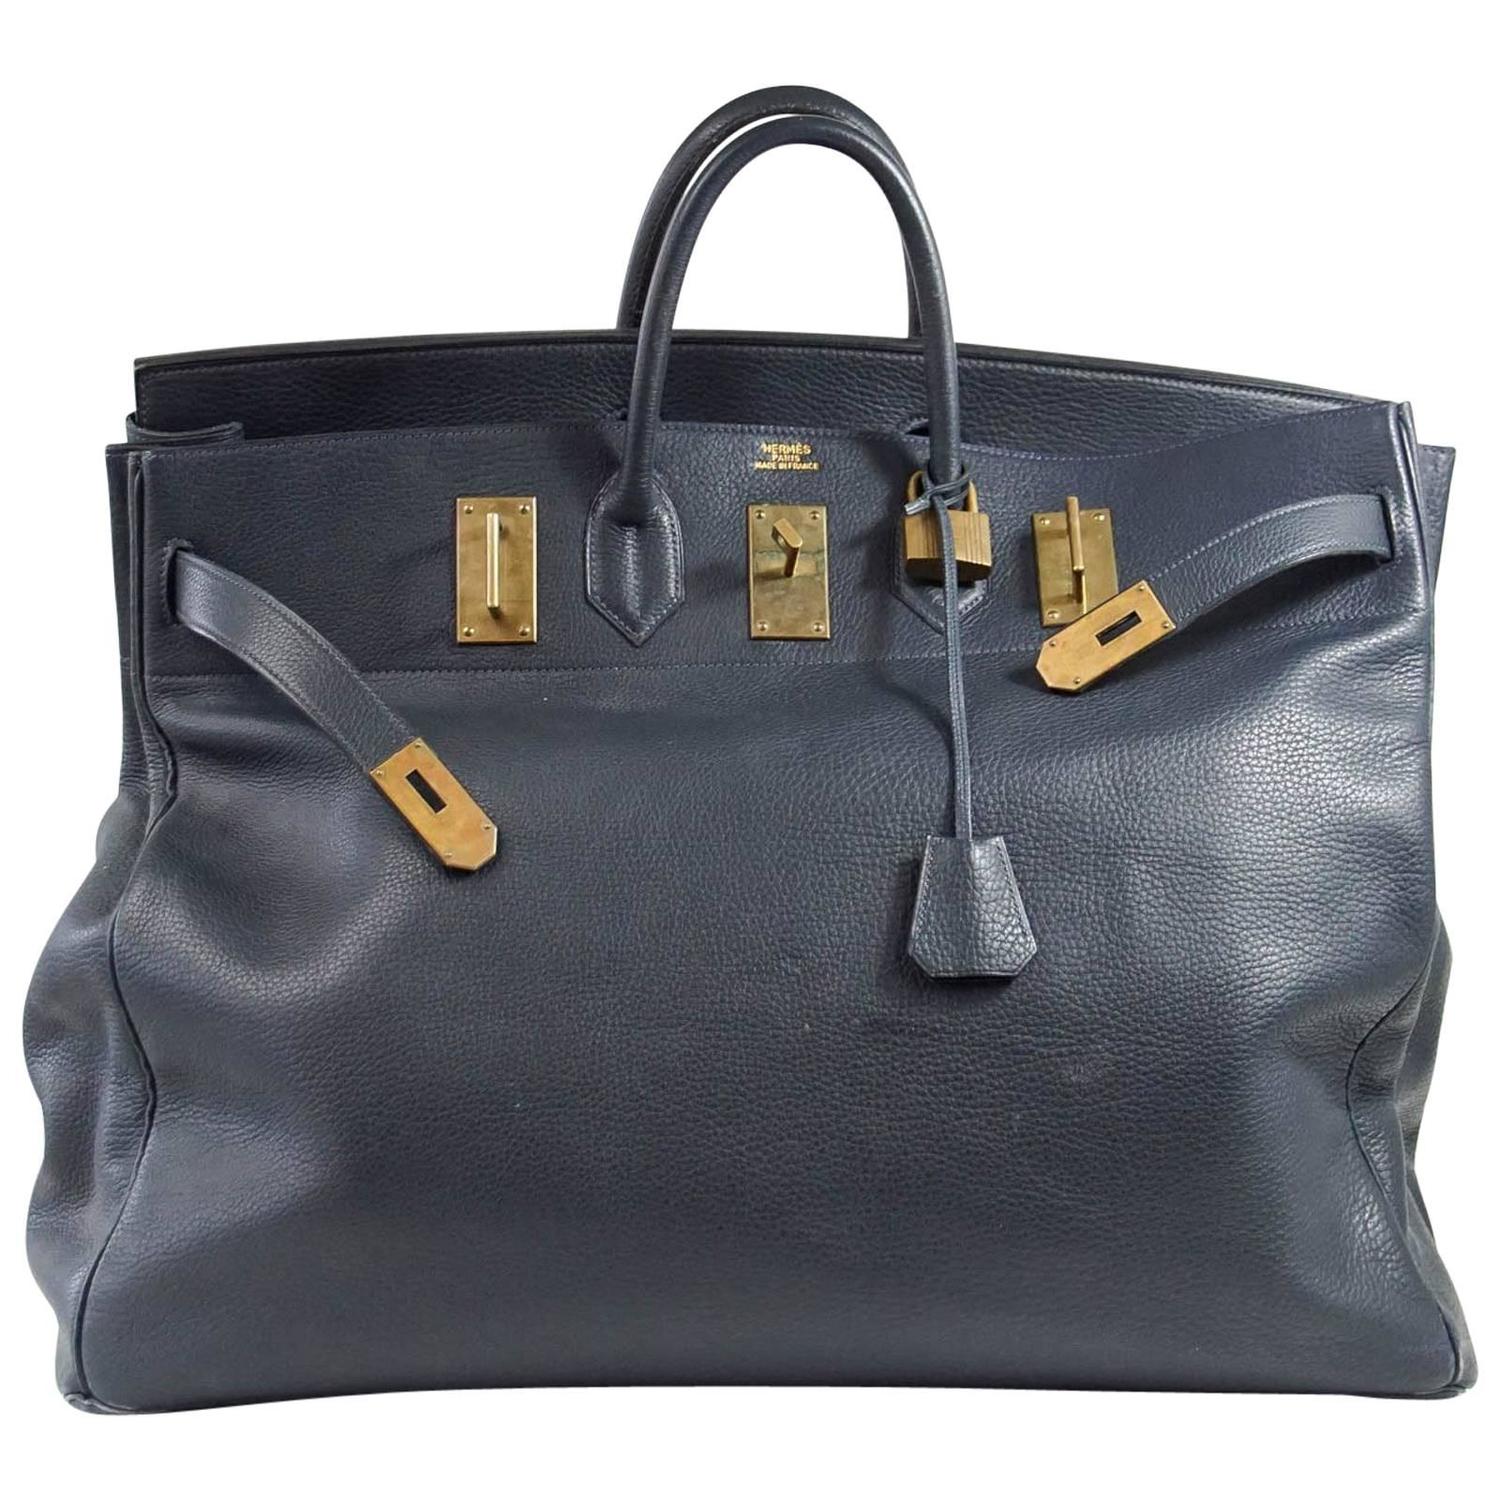 Hermes Birkin Bag 55 - 6 For Sale on 1stDibs  hermes birkin 55, hermes  birkin vintage, vintage hermes birkin bag